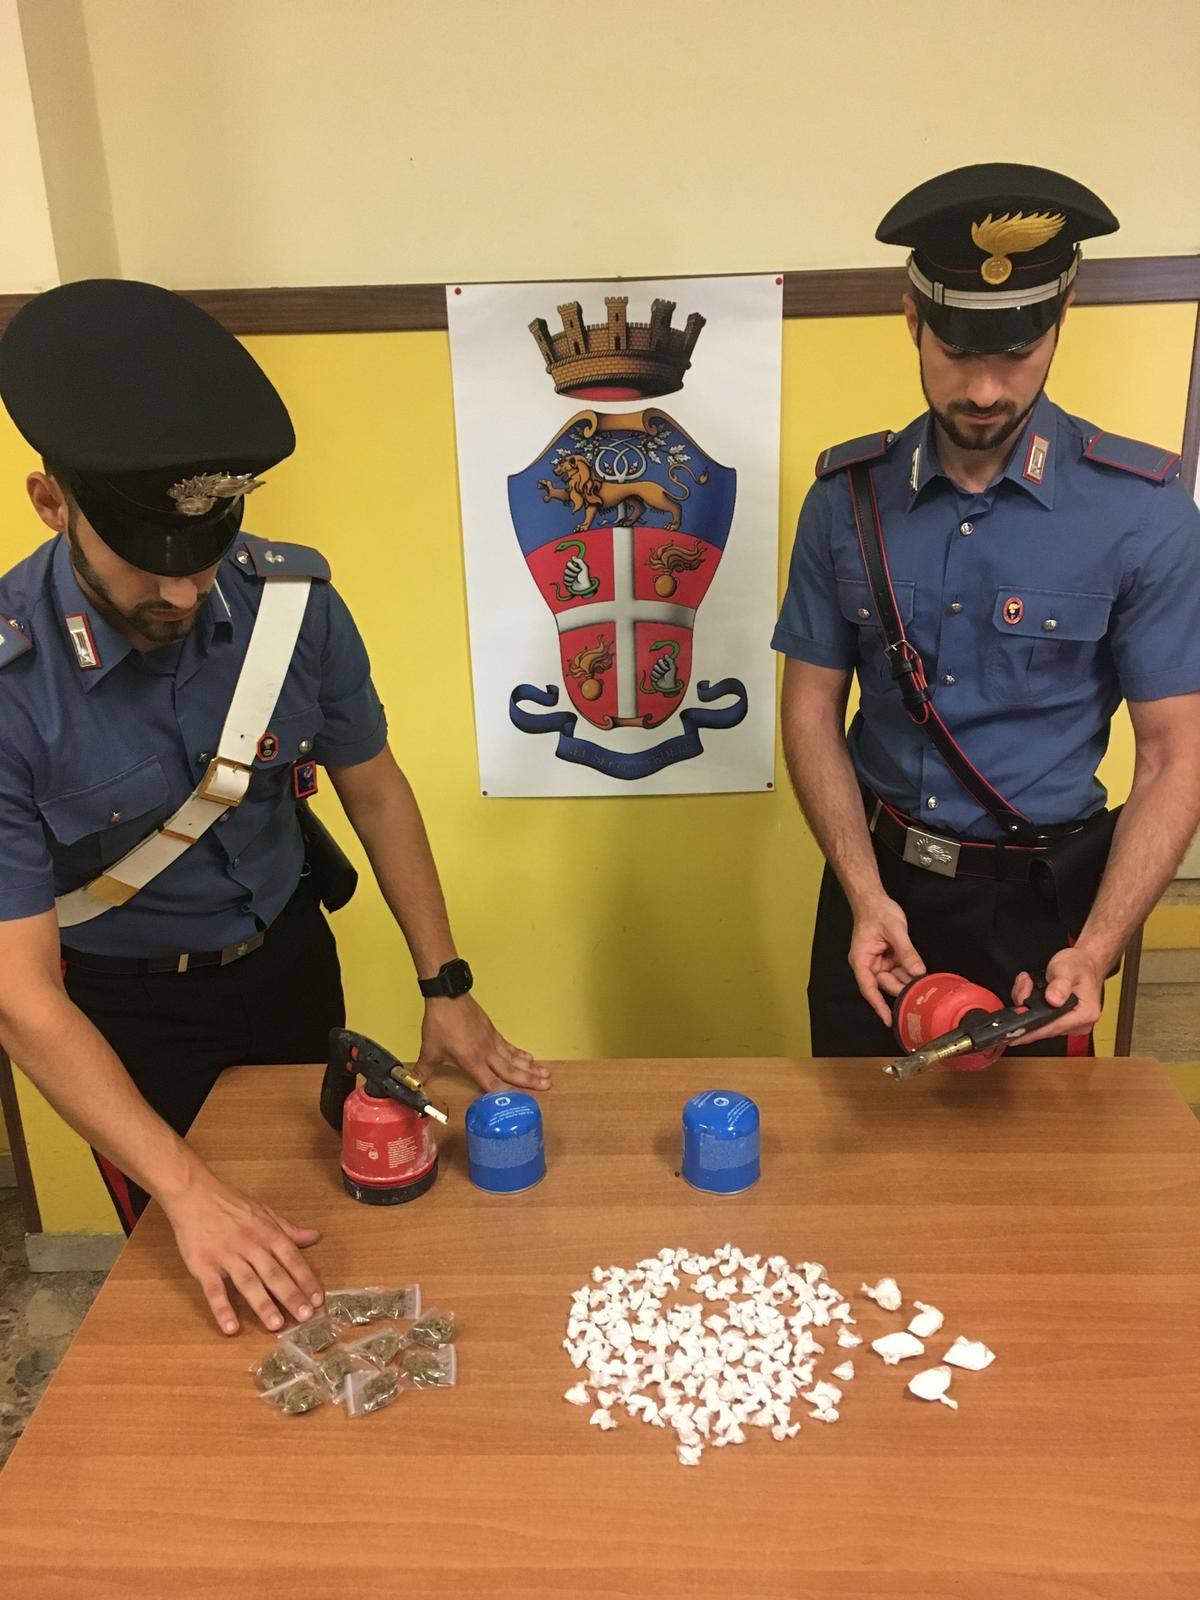 MONTESACRO - Le dosi di droga e i bruciatori sequestrati dai Carabinieri